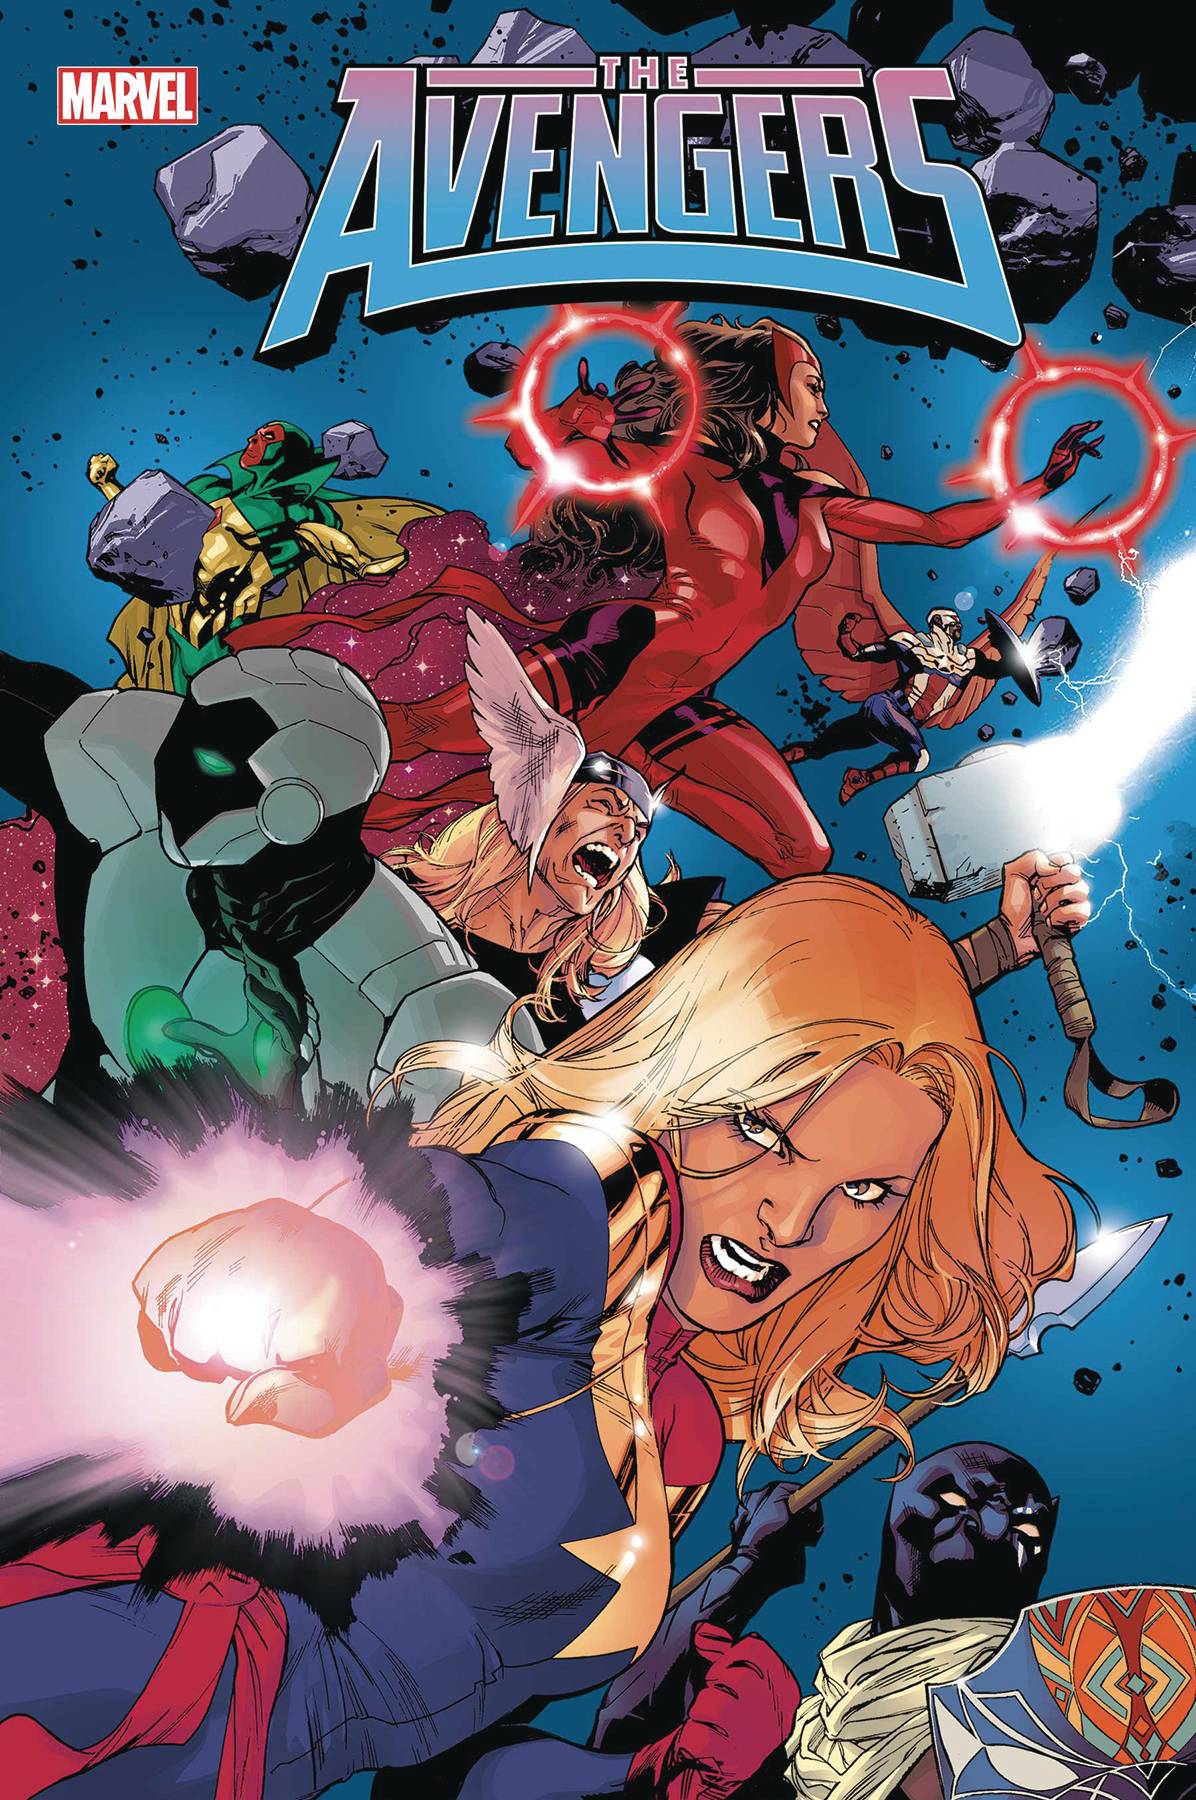 Avengers #06